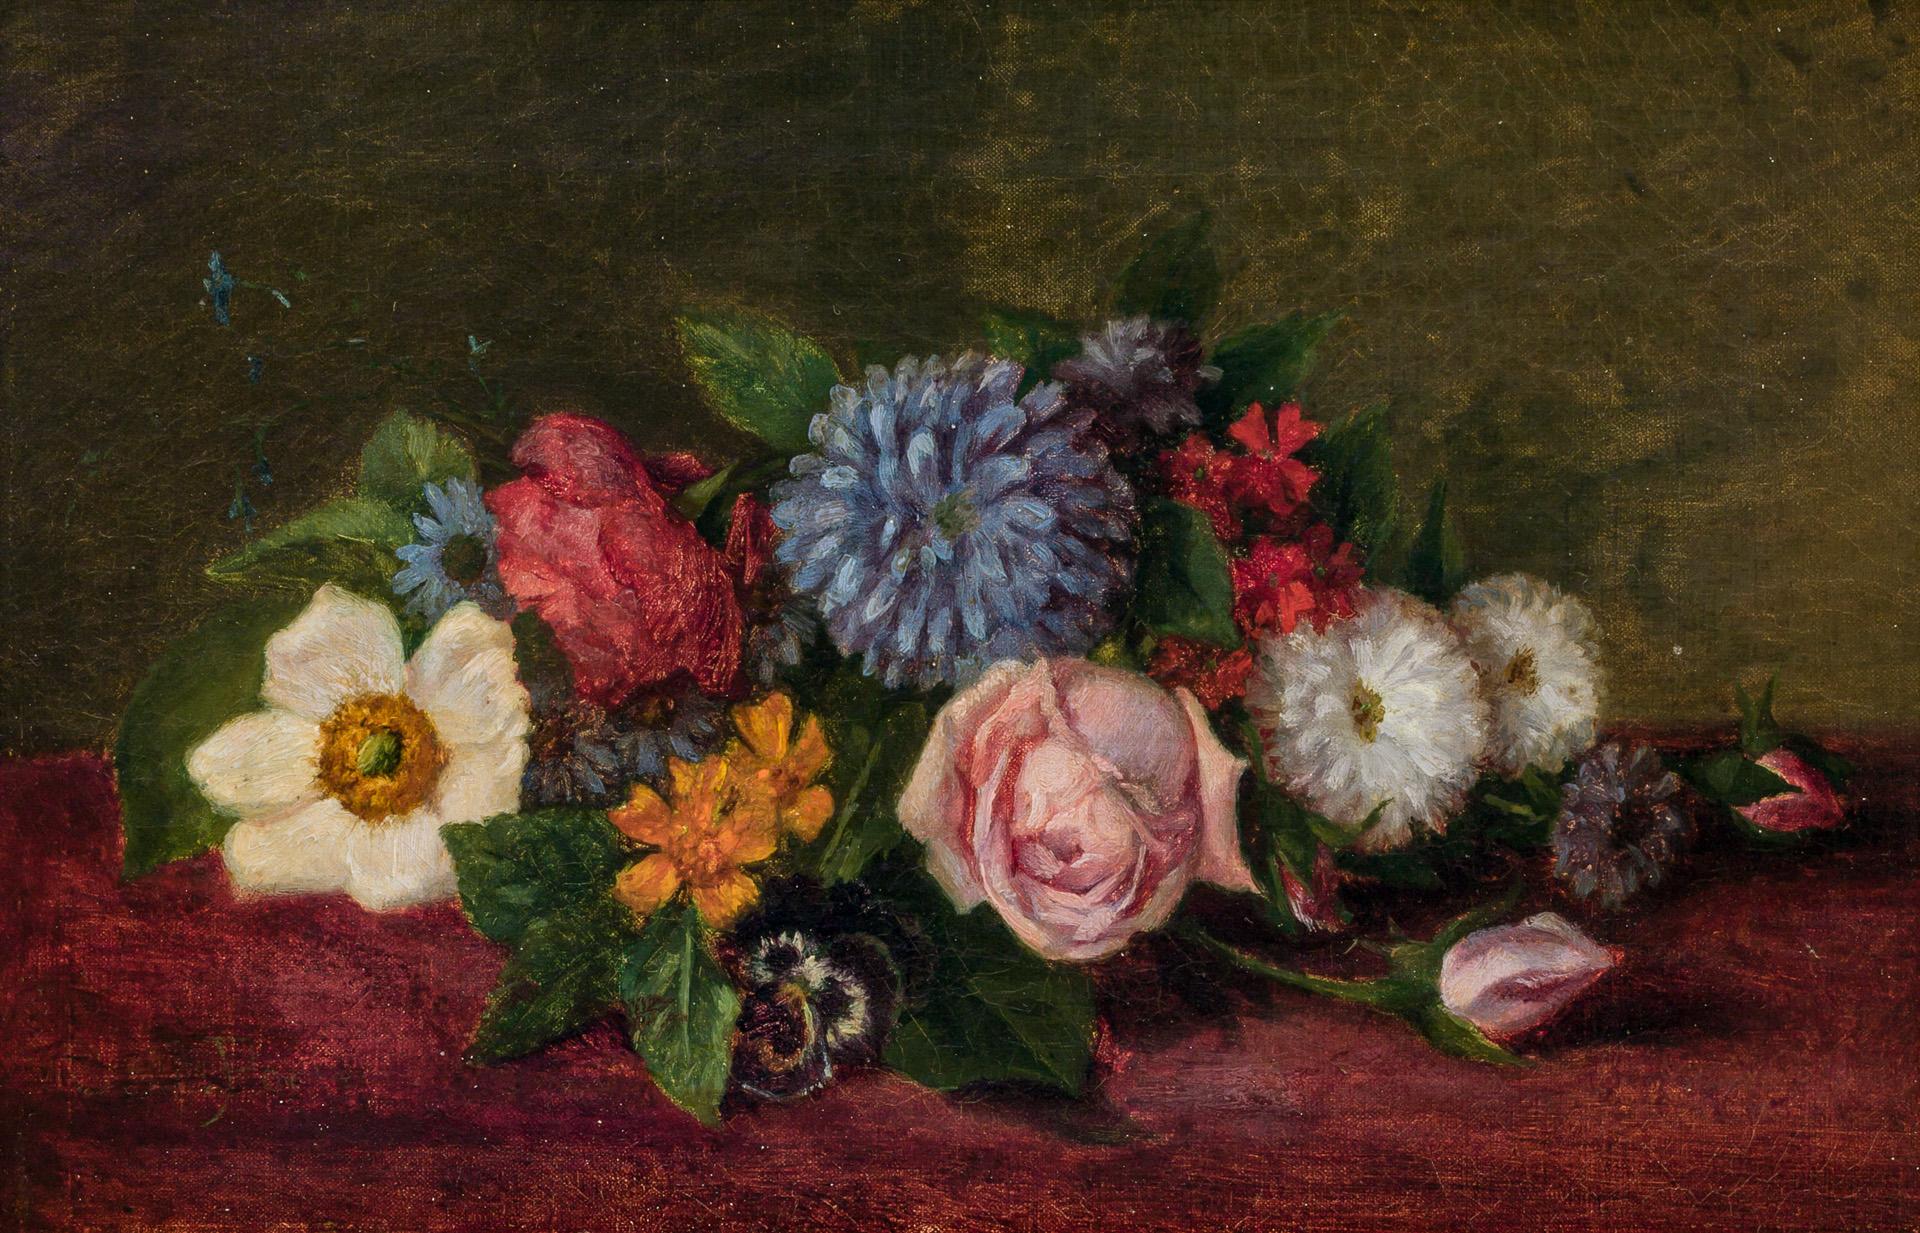 Bodegón floral by Charles Ethan Porter - c. 1900 - 19 x 29 cm Colección privada